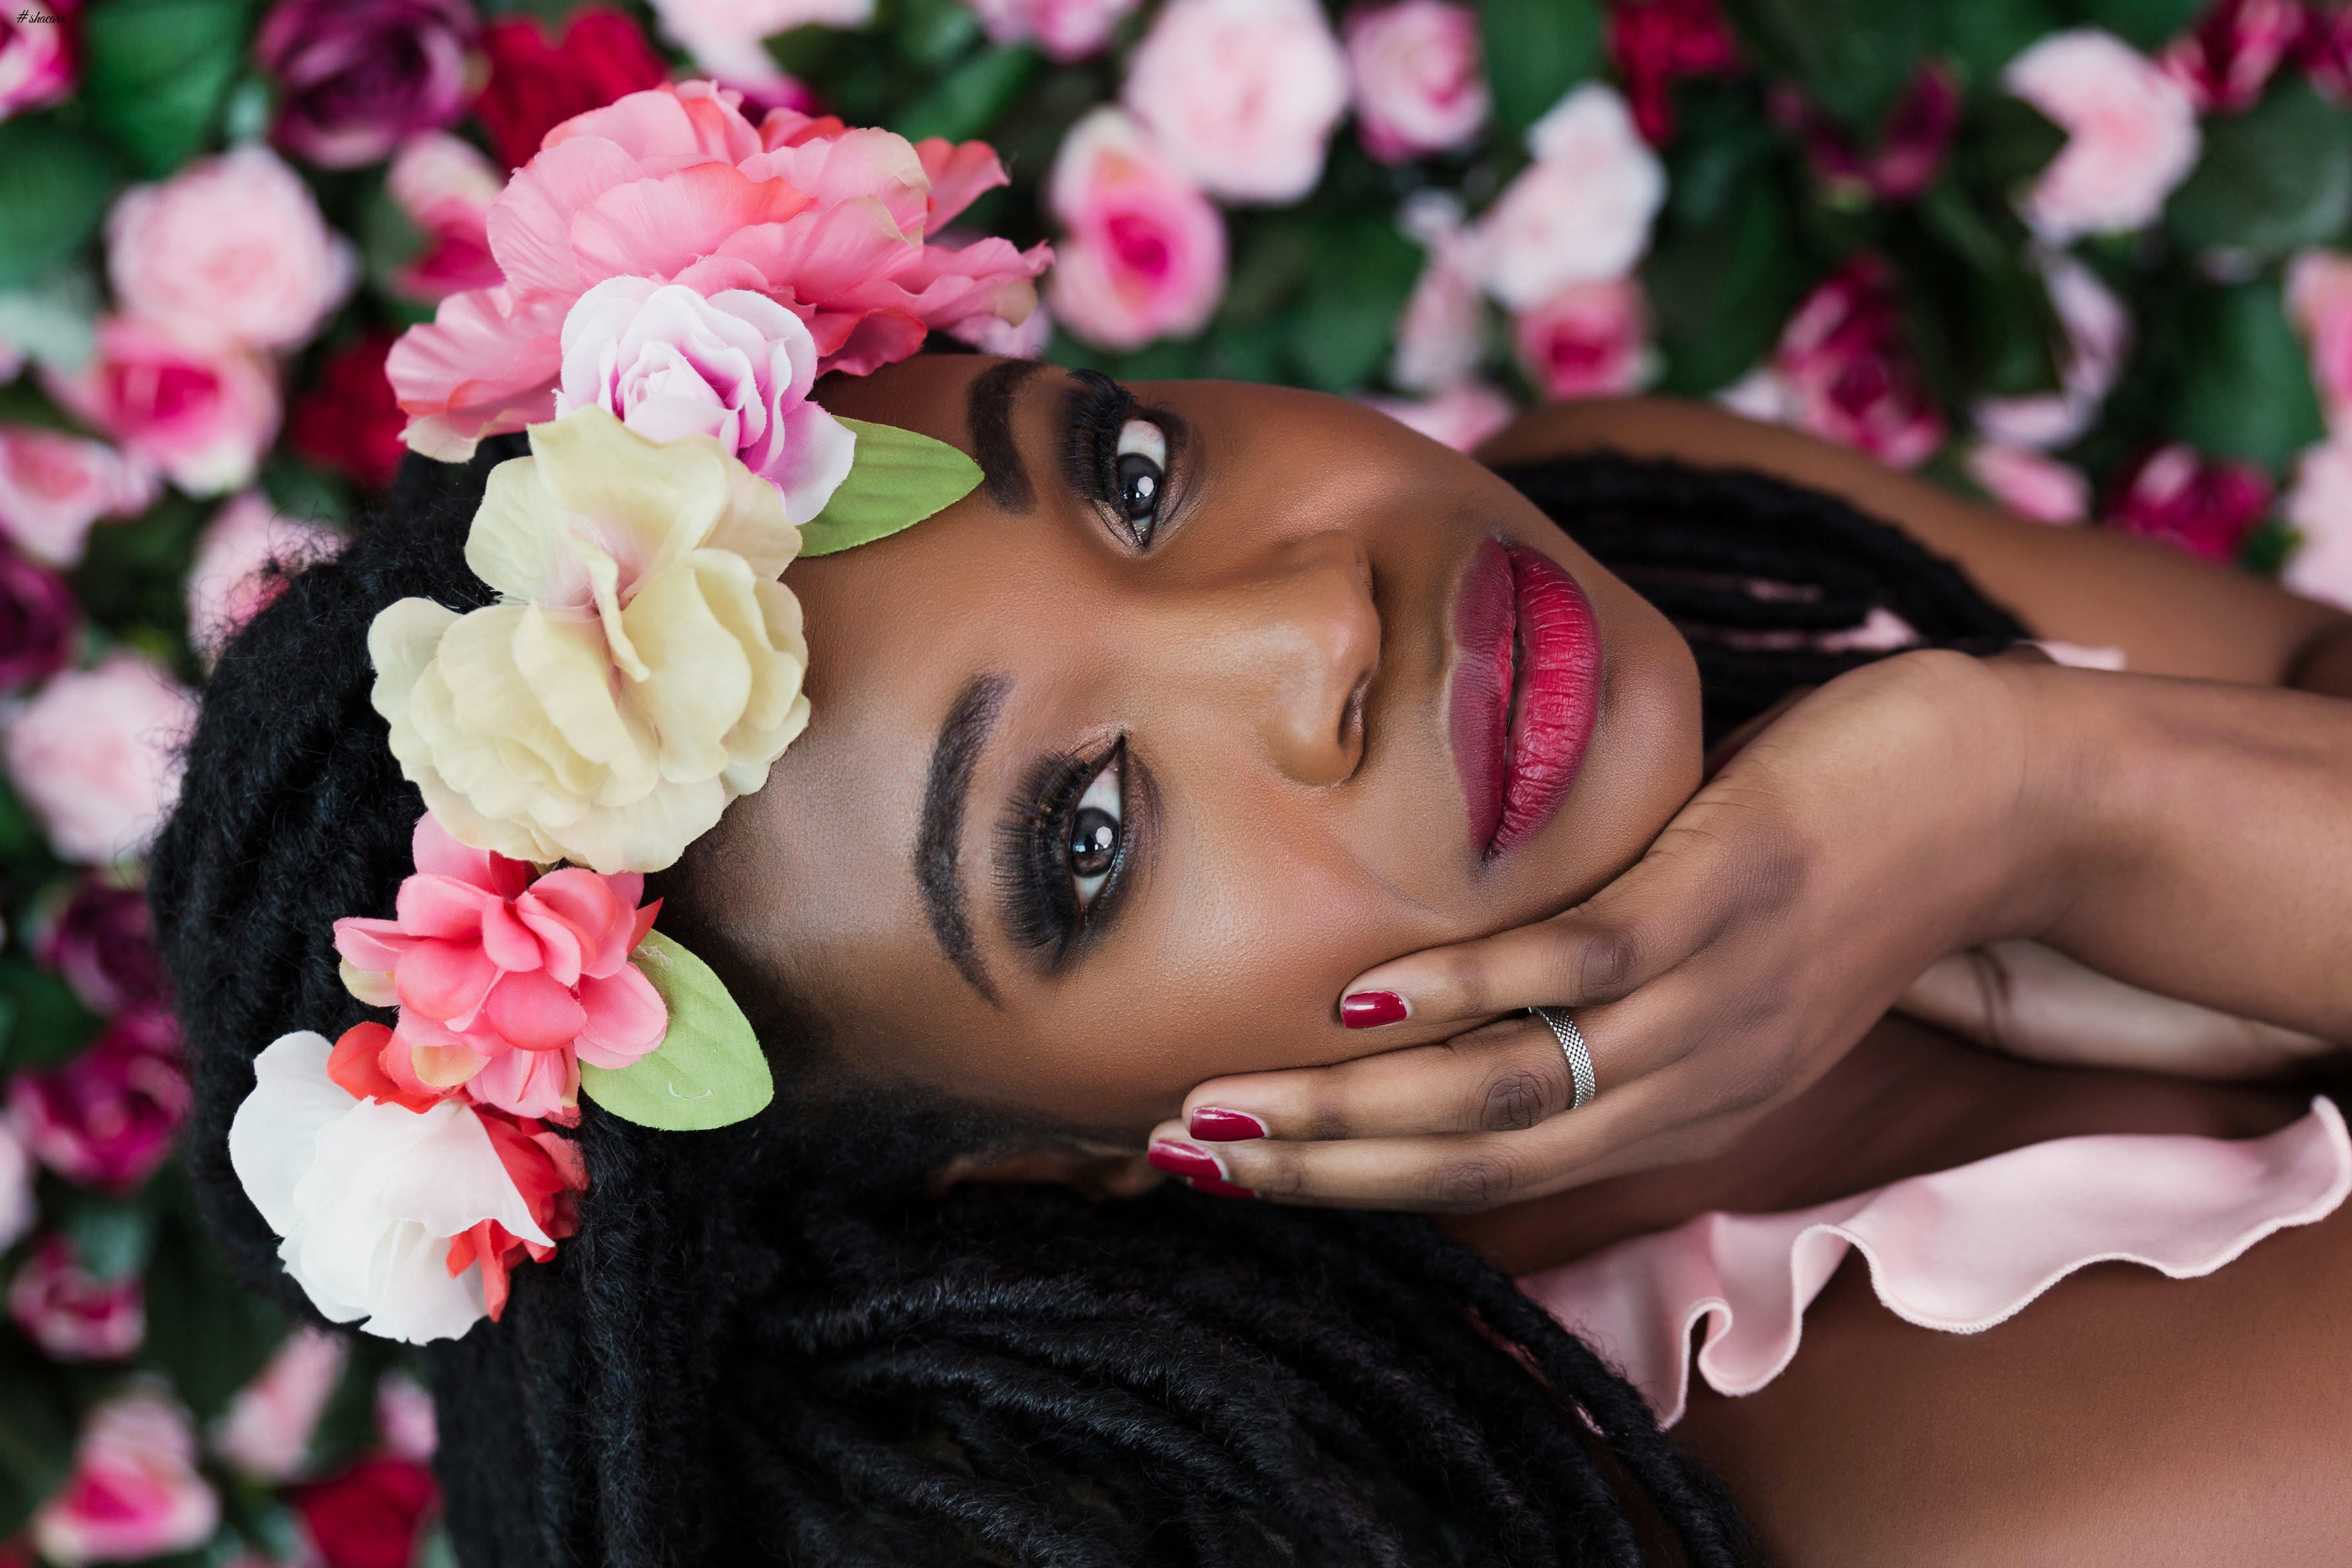 Efena Otobo Releases Hot New Beauty Photos!